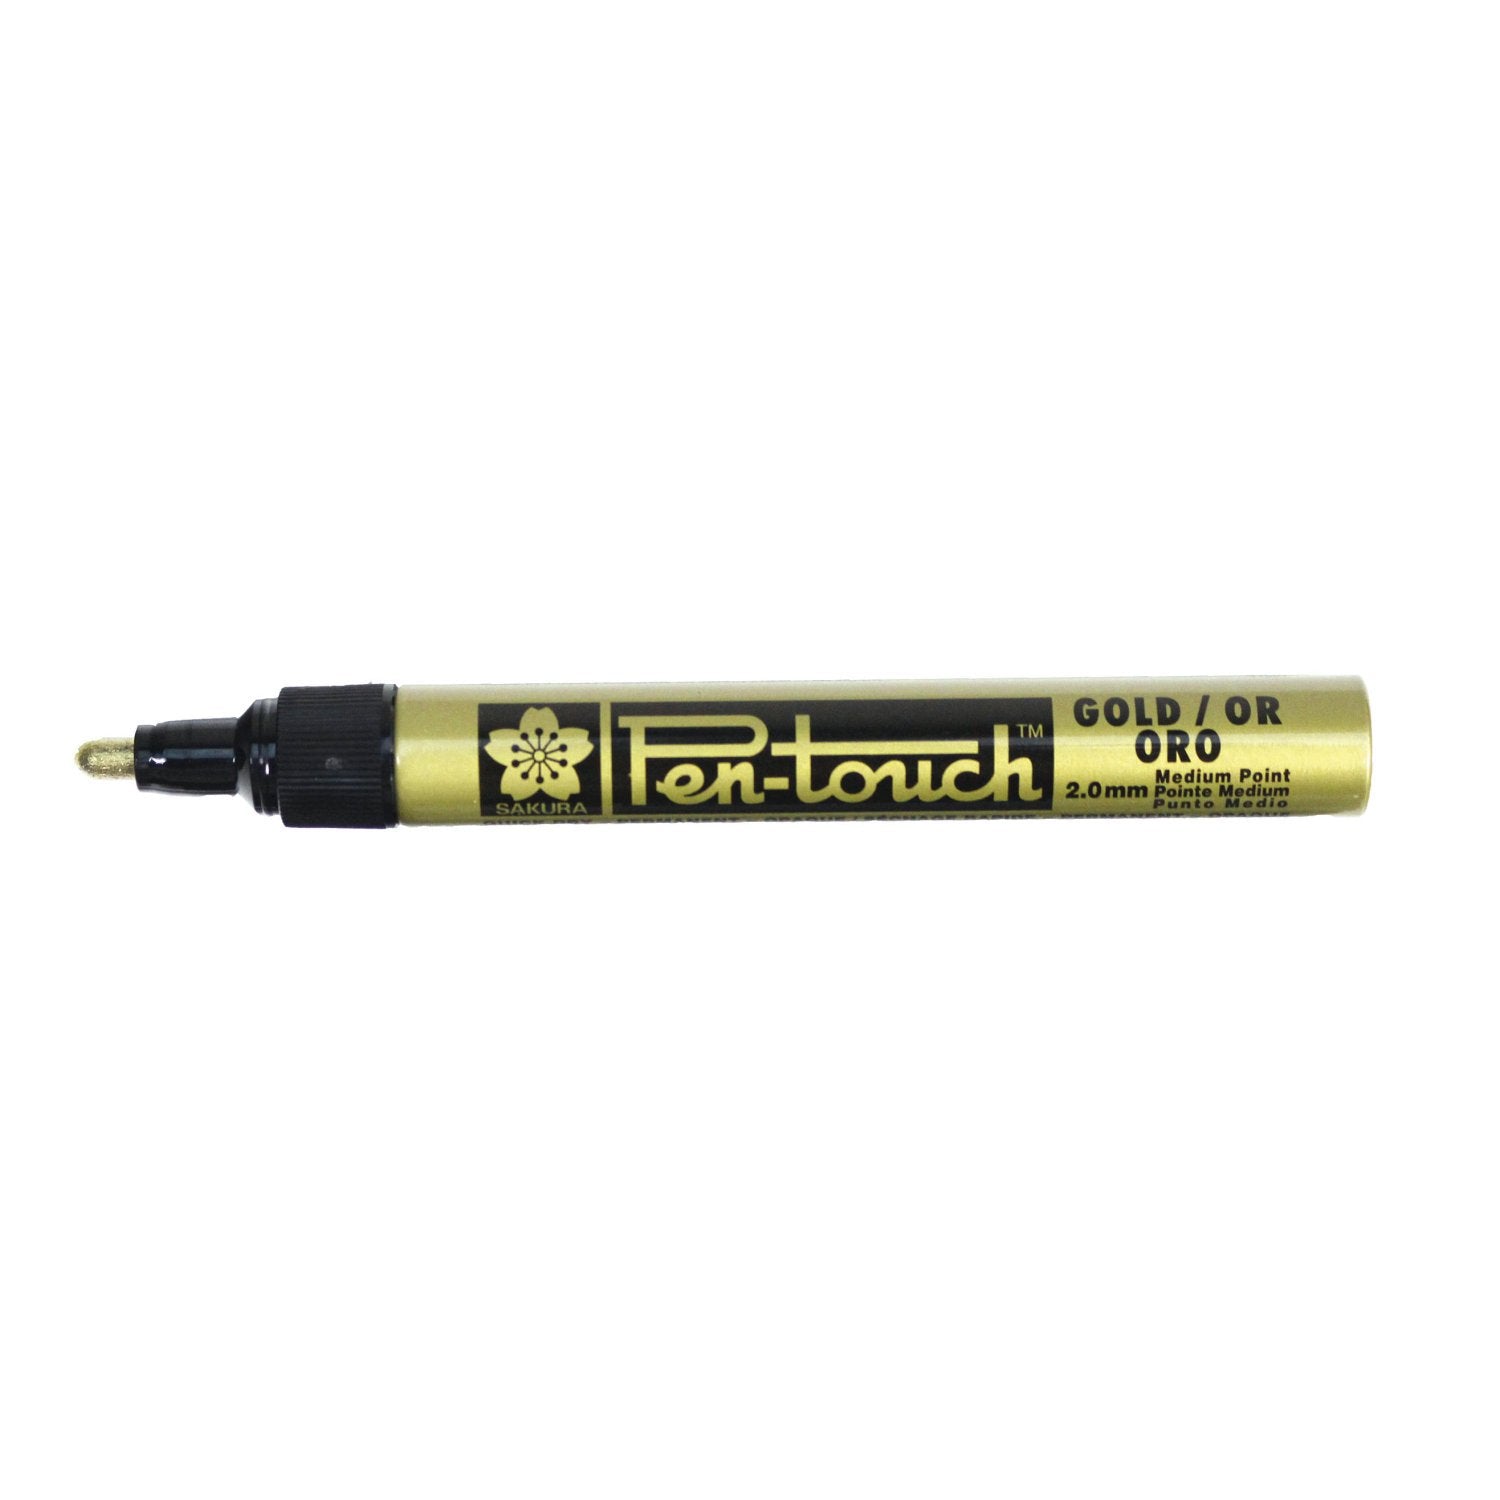 Pen-Touch Medium Point 2.0mm Gold